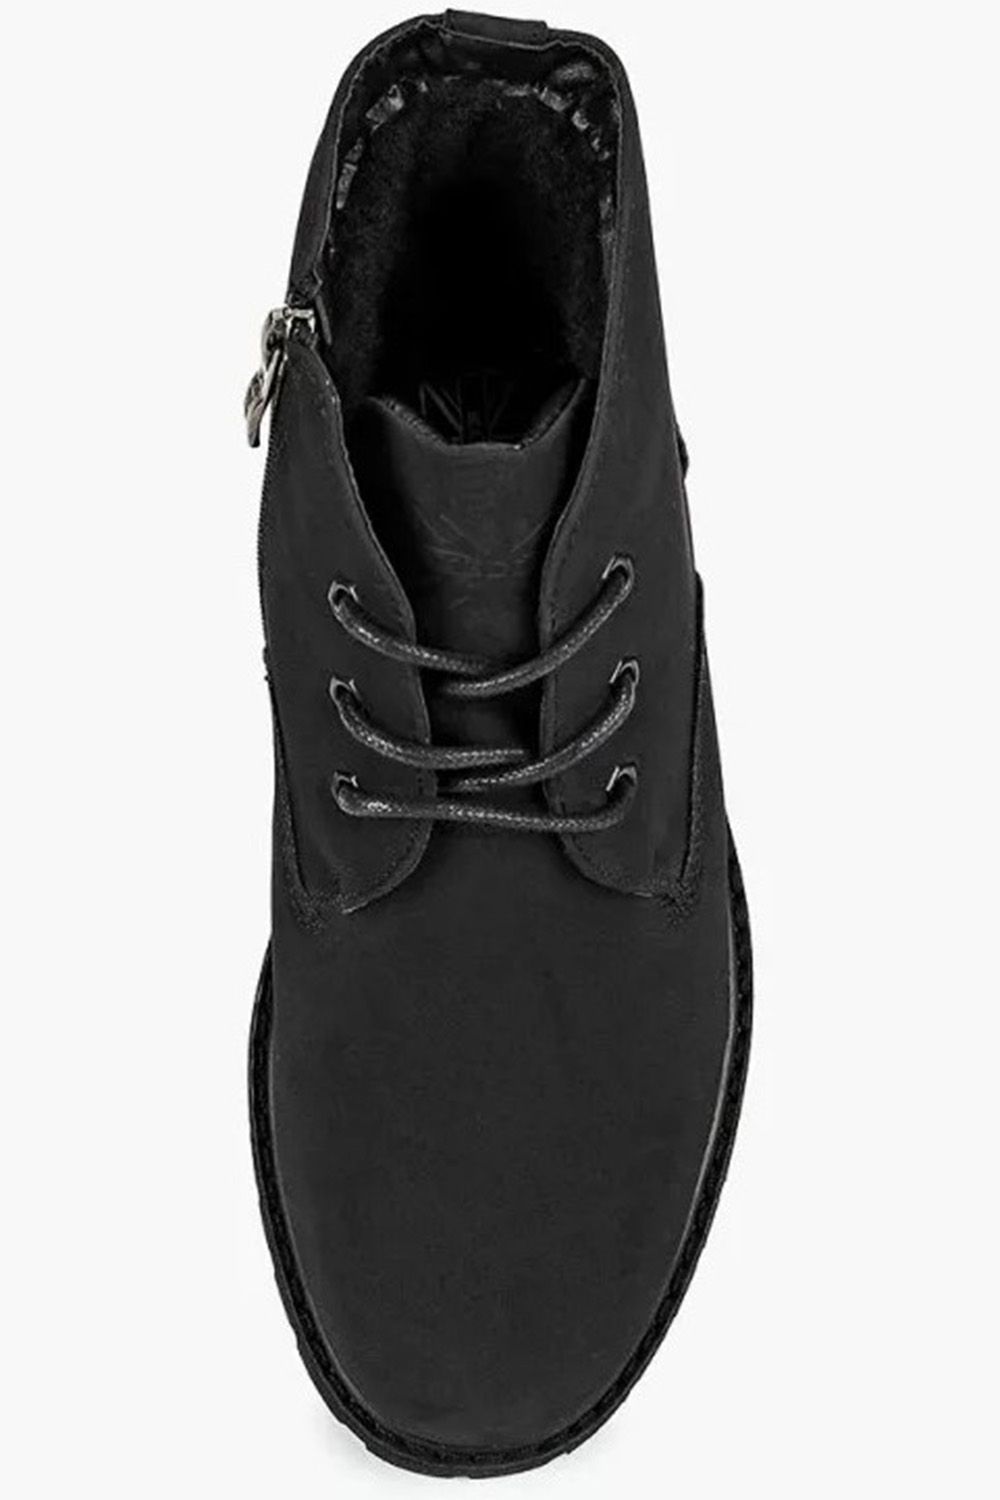 Ботинки Keddo, размер 40, цвет черный 588139/03-03 - фото 3